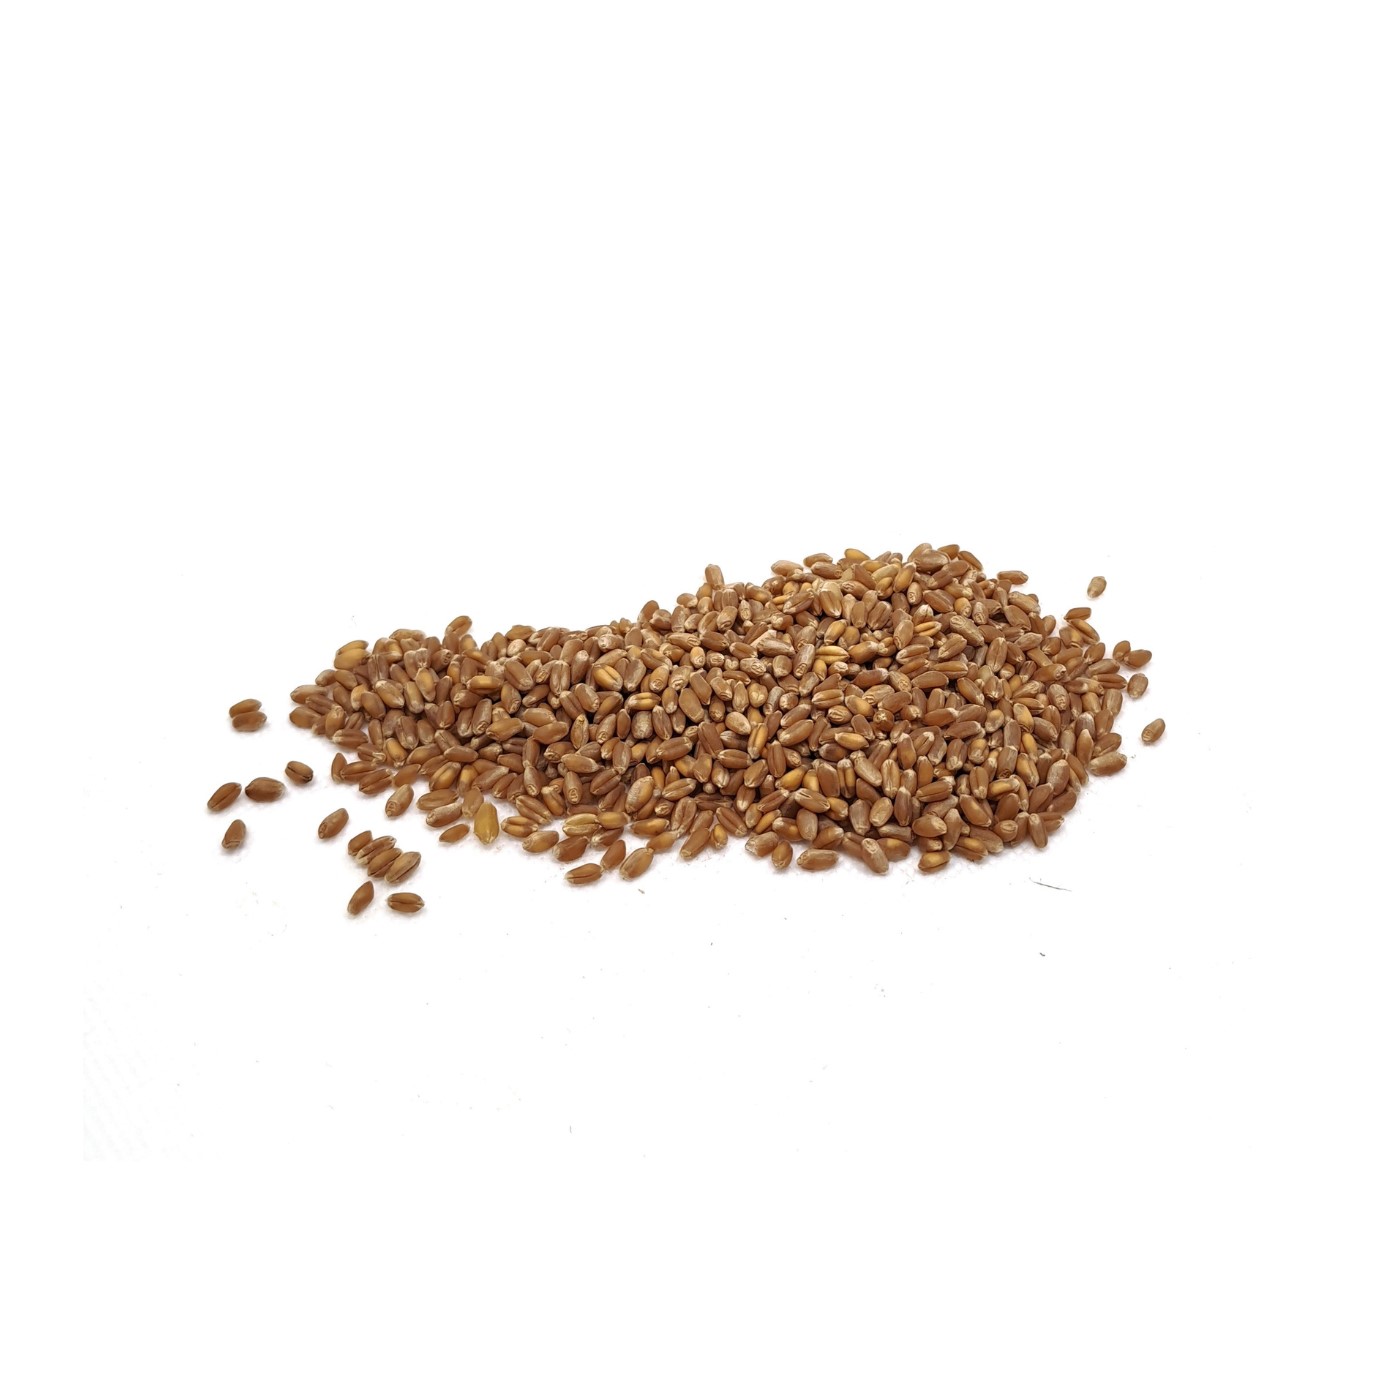 Organic wheat seed